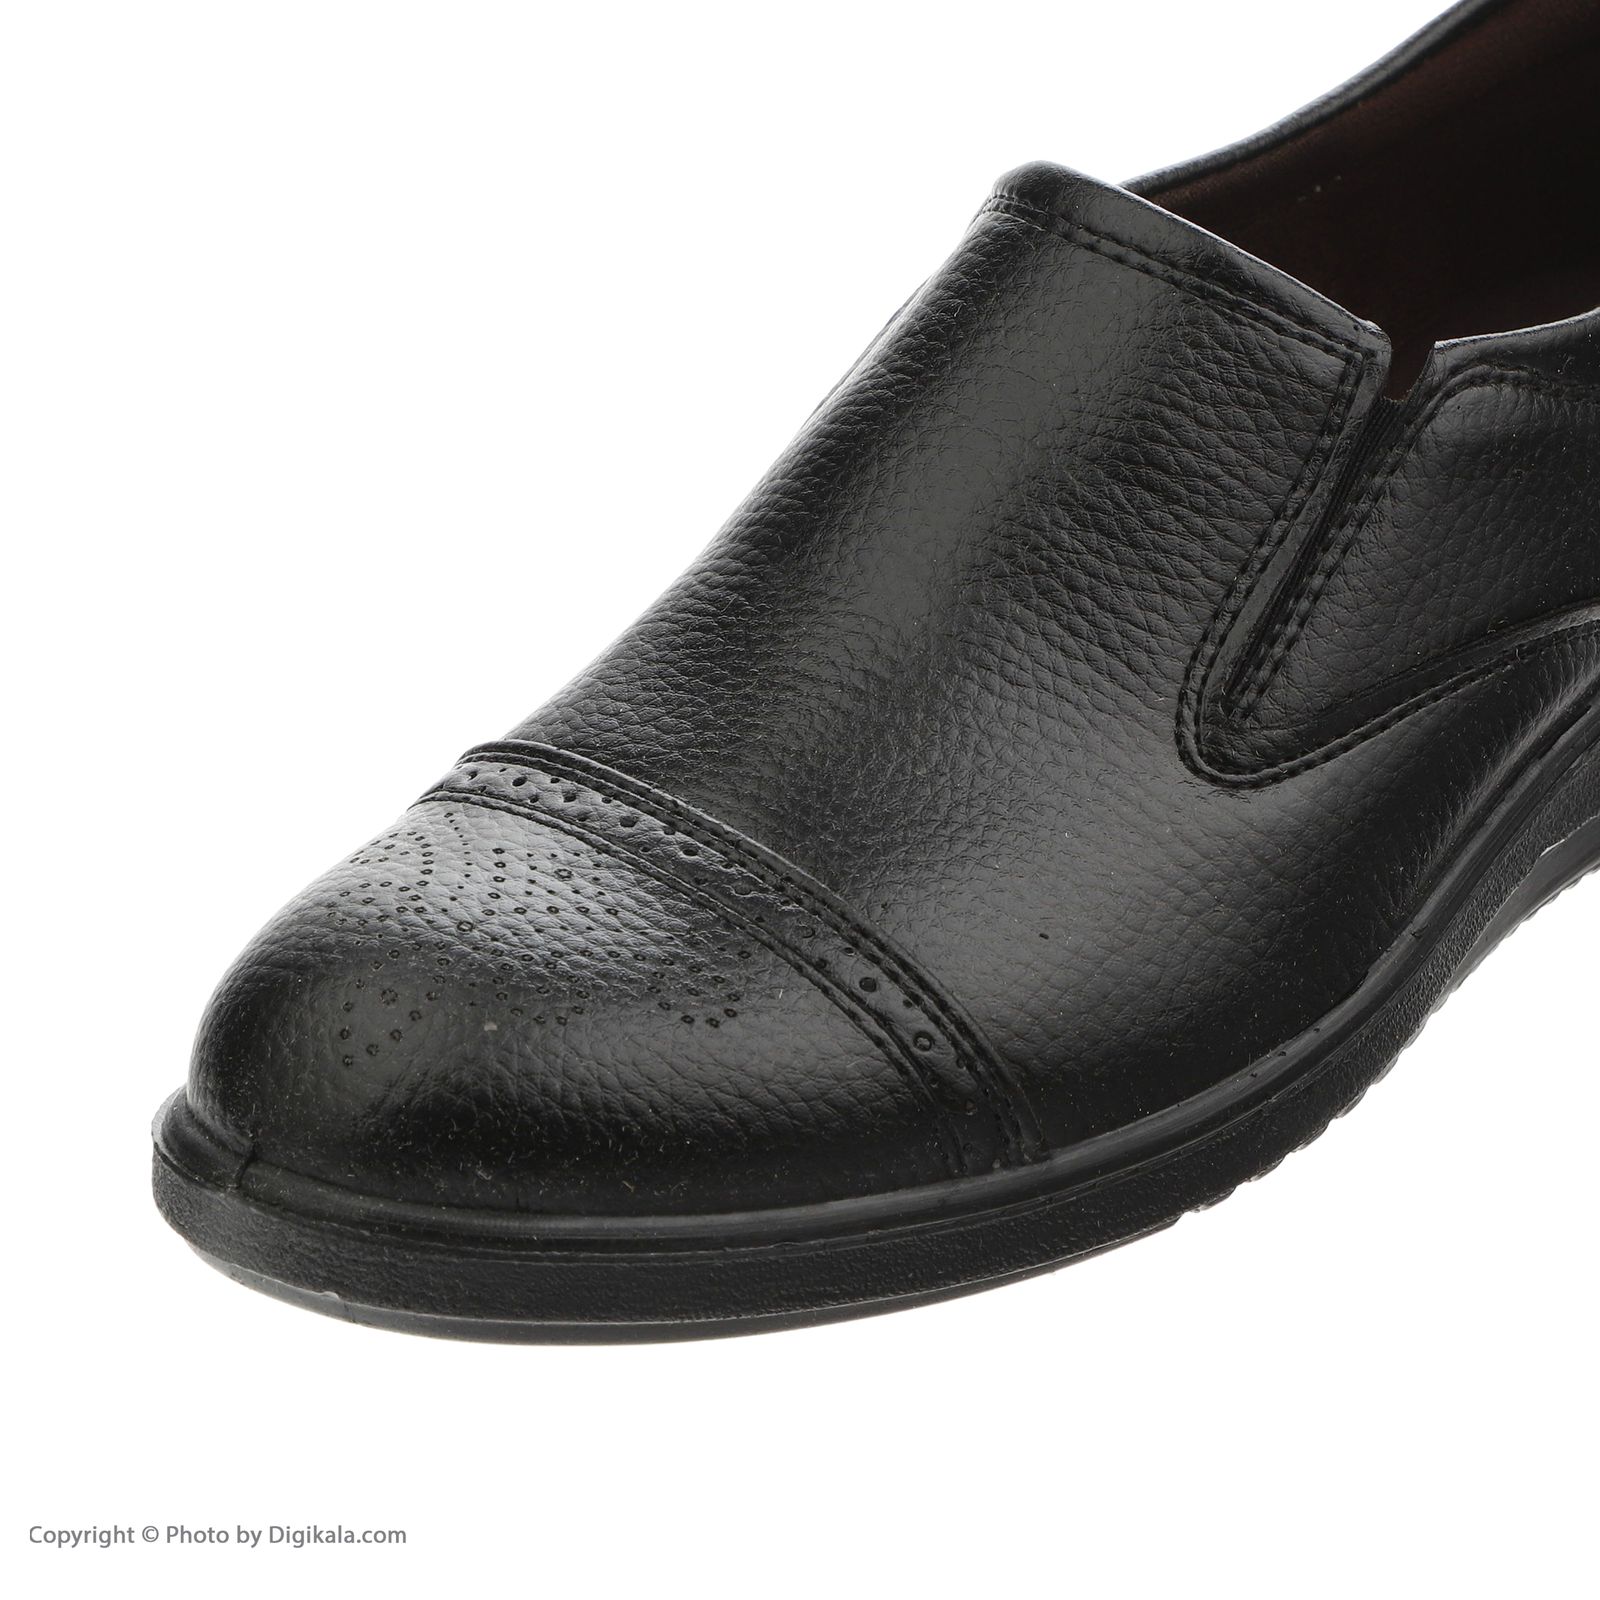 کفش روزمره مردانه کروماکی مدل طبی چرم مصنوعی فلوتر کد 1002 -  - 7